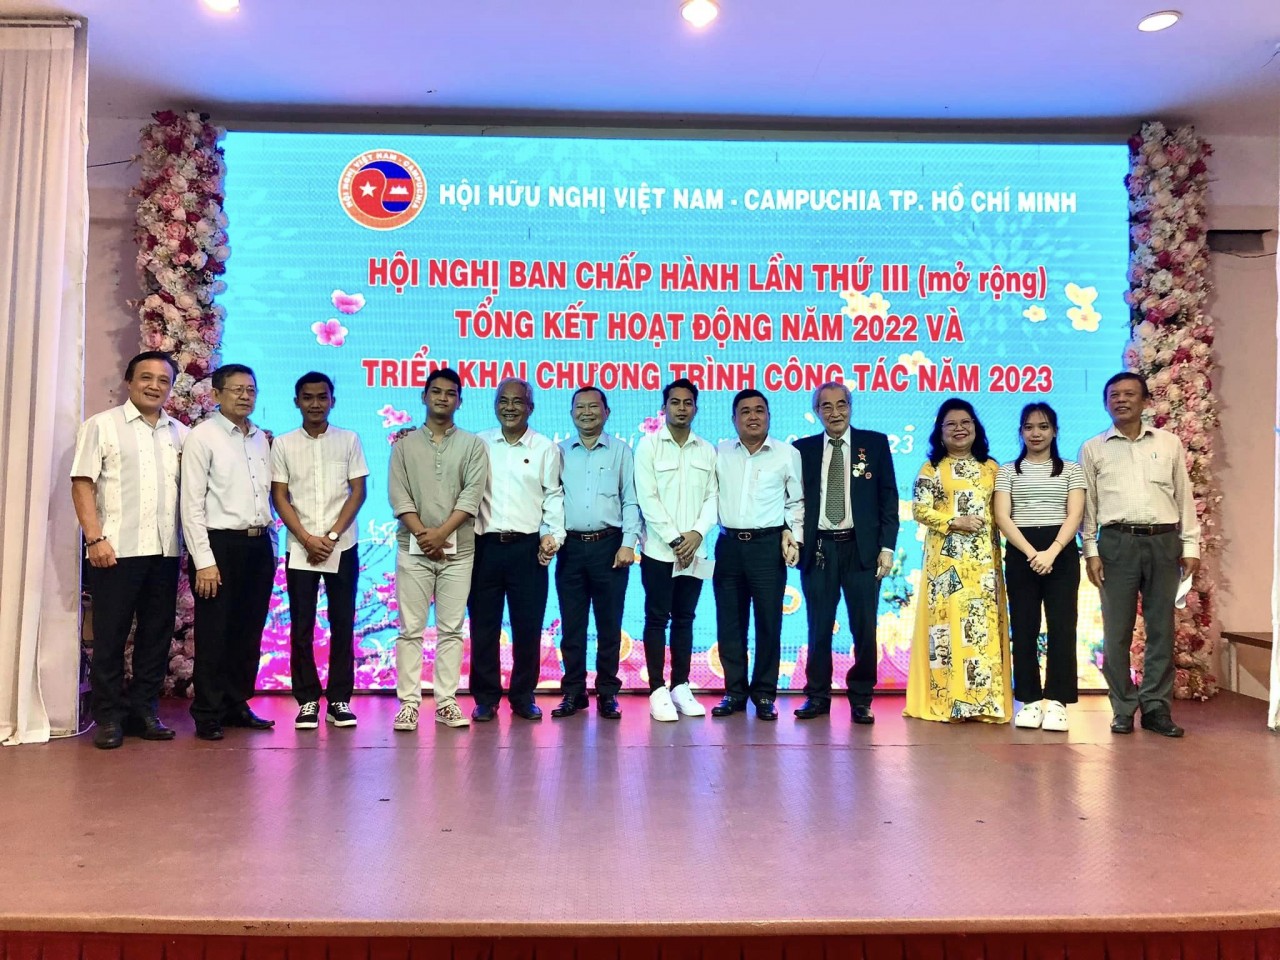 Hội Hữu nghị Việt Nam - Campuchia TPHCM đẩy mạnh các hoạt động xã hội từ thiện